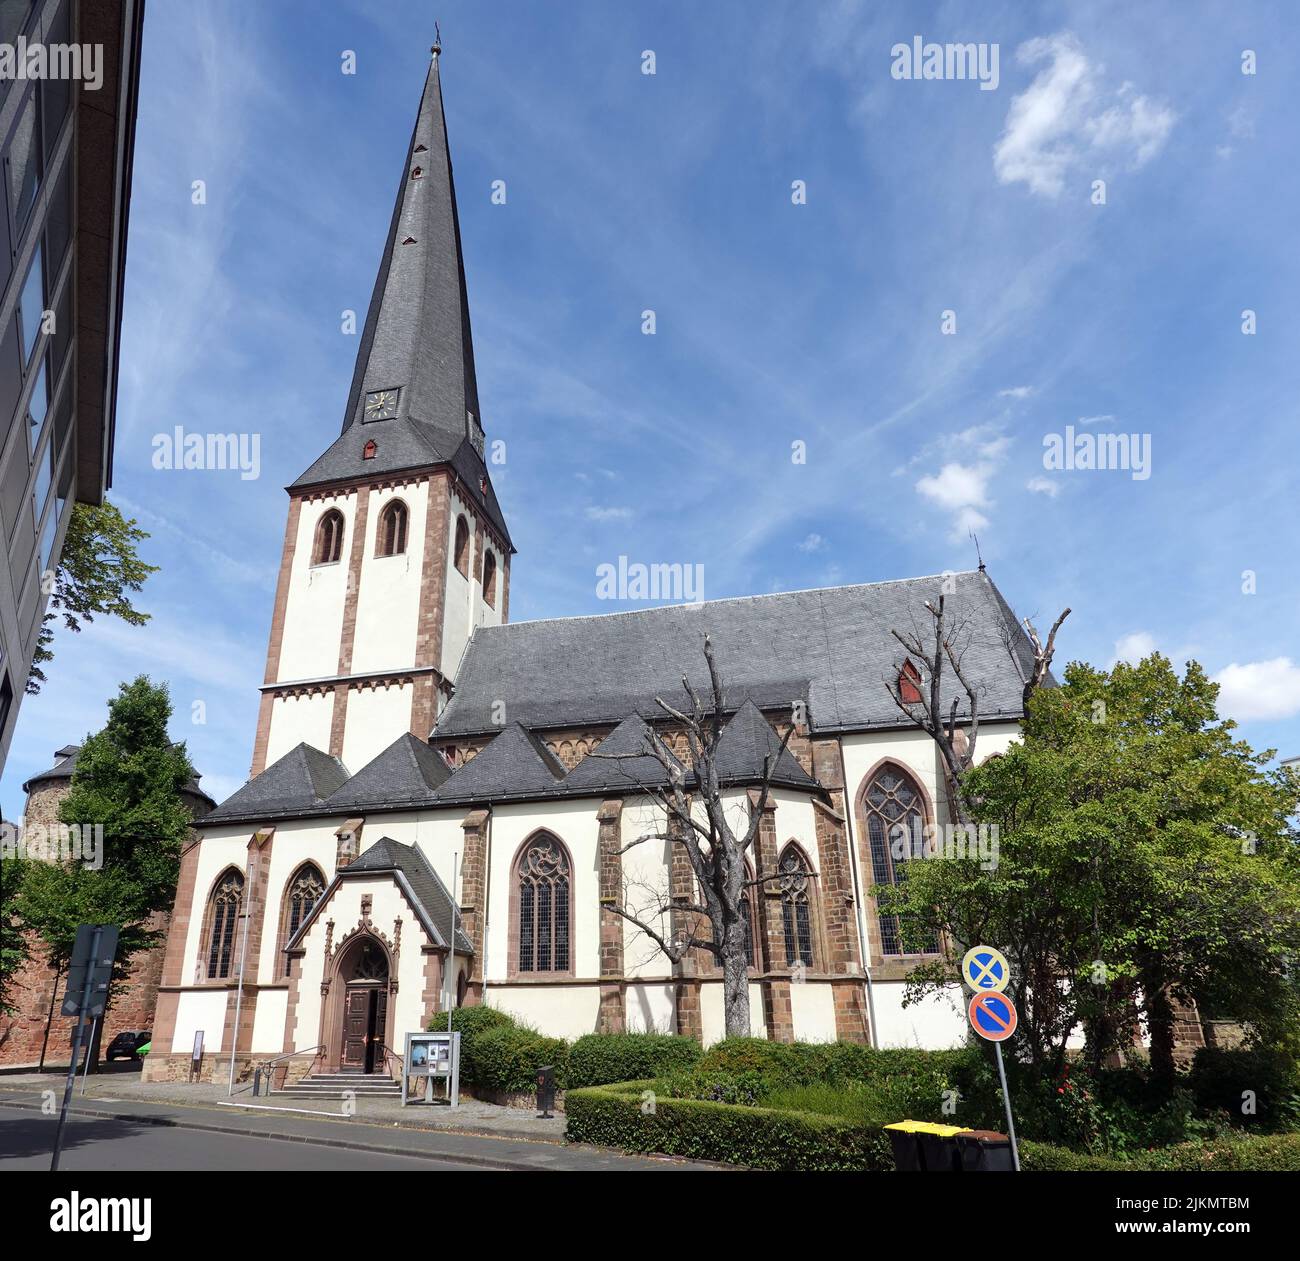 Katholische Pfarrkirche St. Martin, Nordrhein-Westfalen, Deutschland, Euskirchen Stock Photo